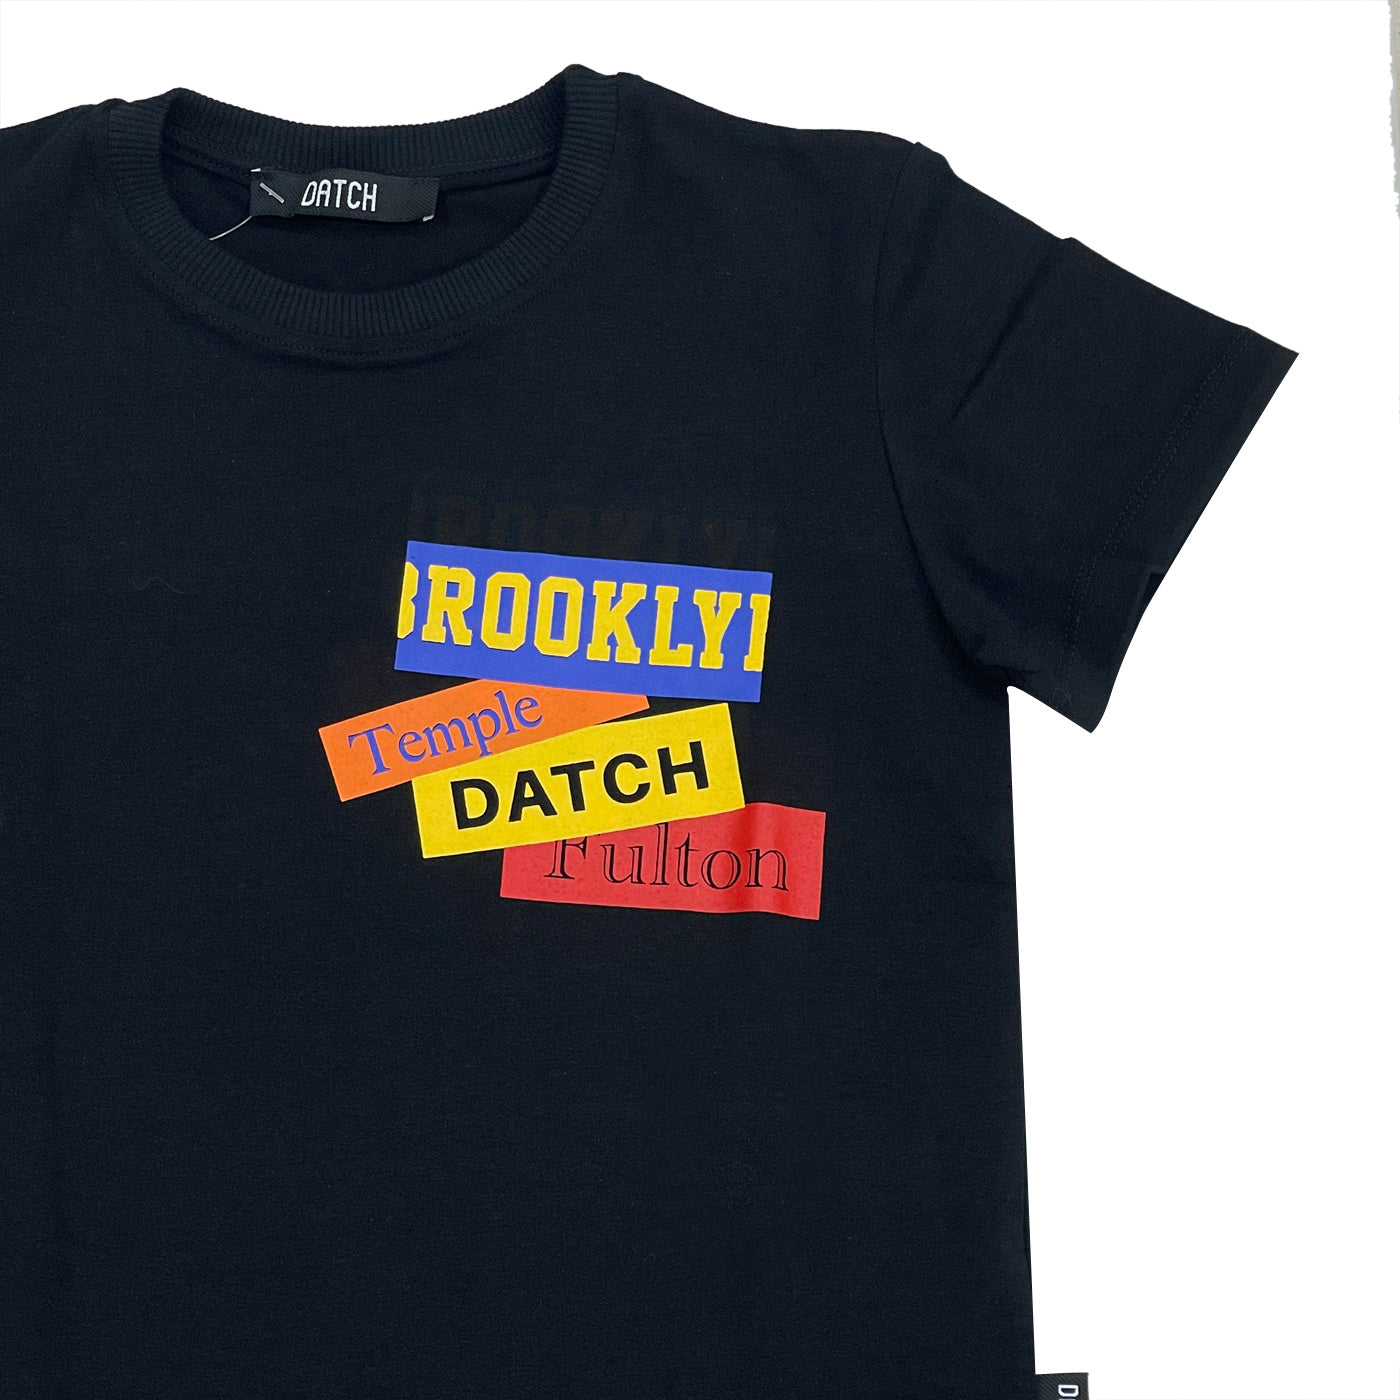 Datch t-shirt bambino